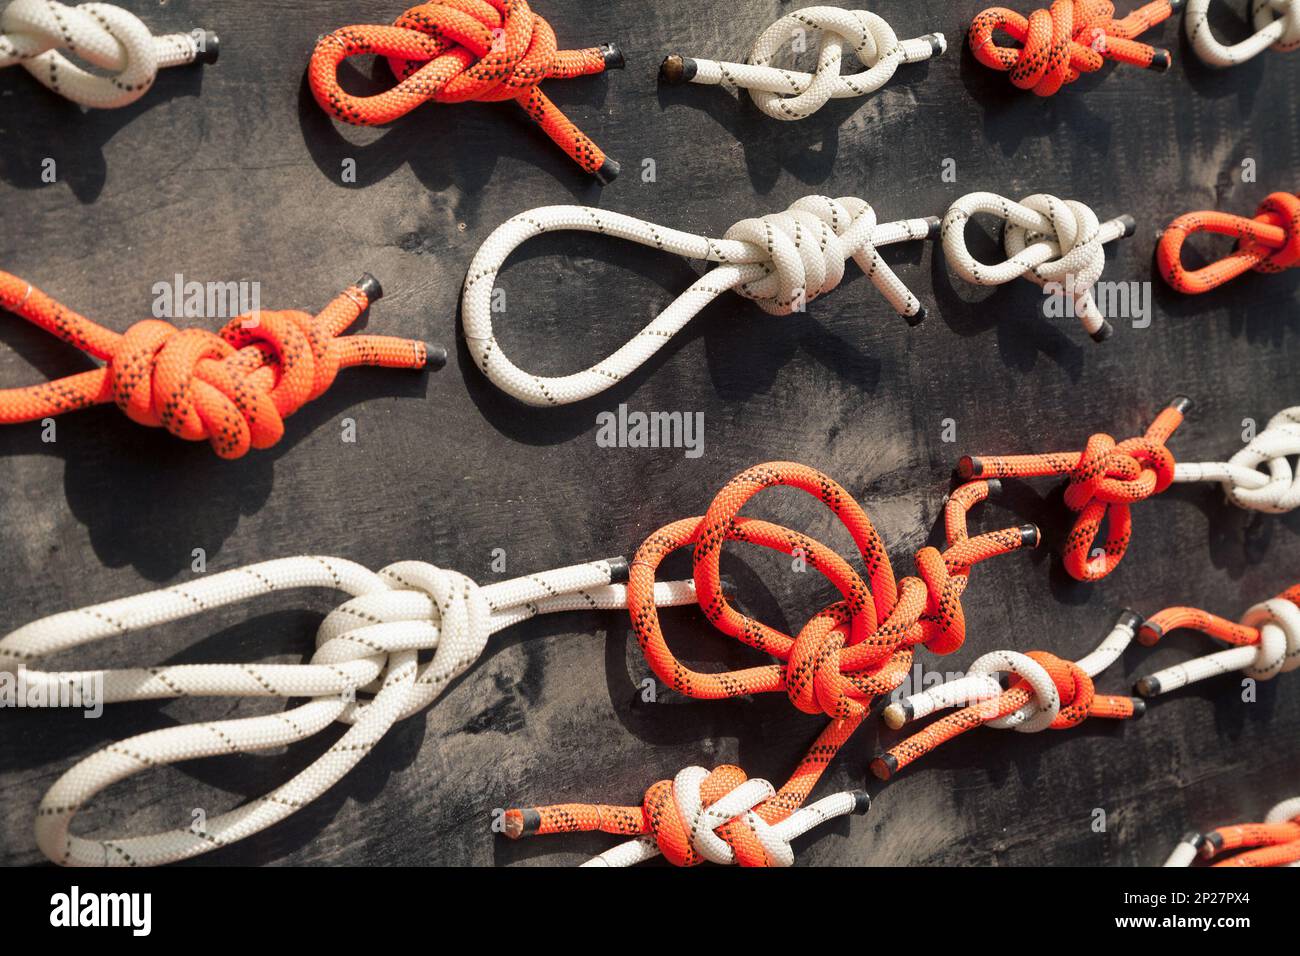 Viele Arten von Knoten auf einem Display gezeigt. Verschiedene Methoden zur Befestigung und Sicherung Seile Stockfoto